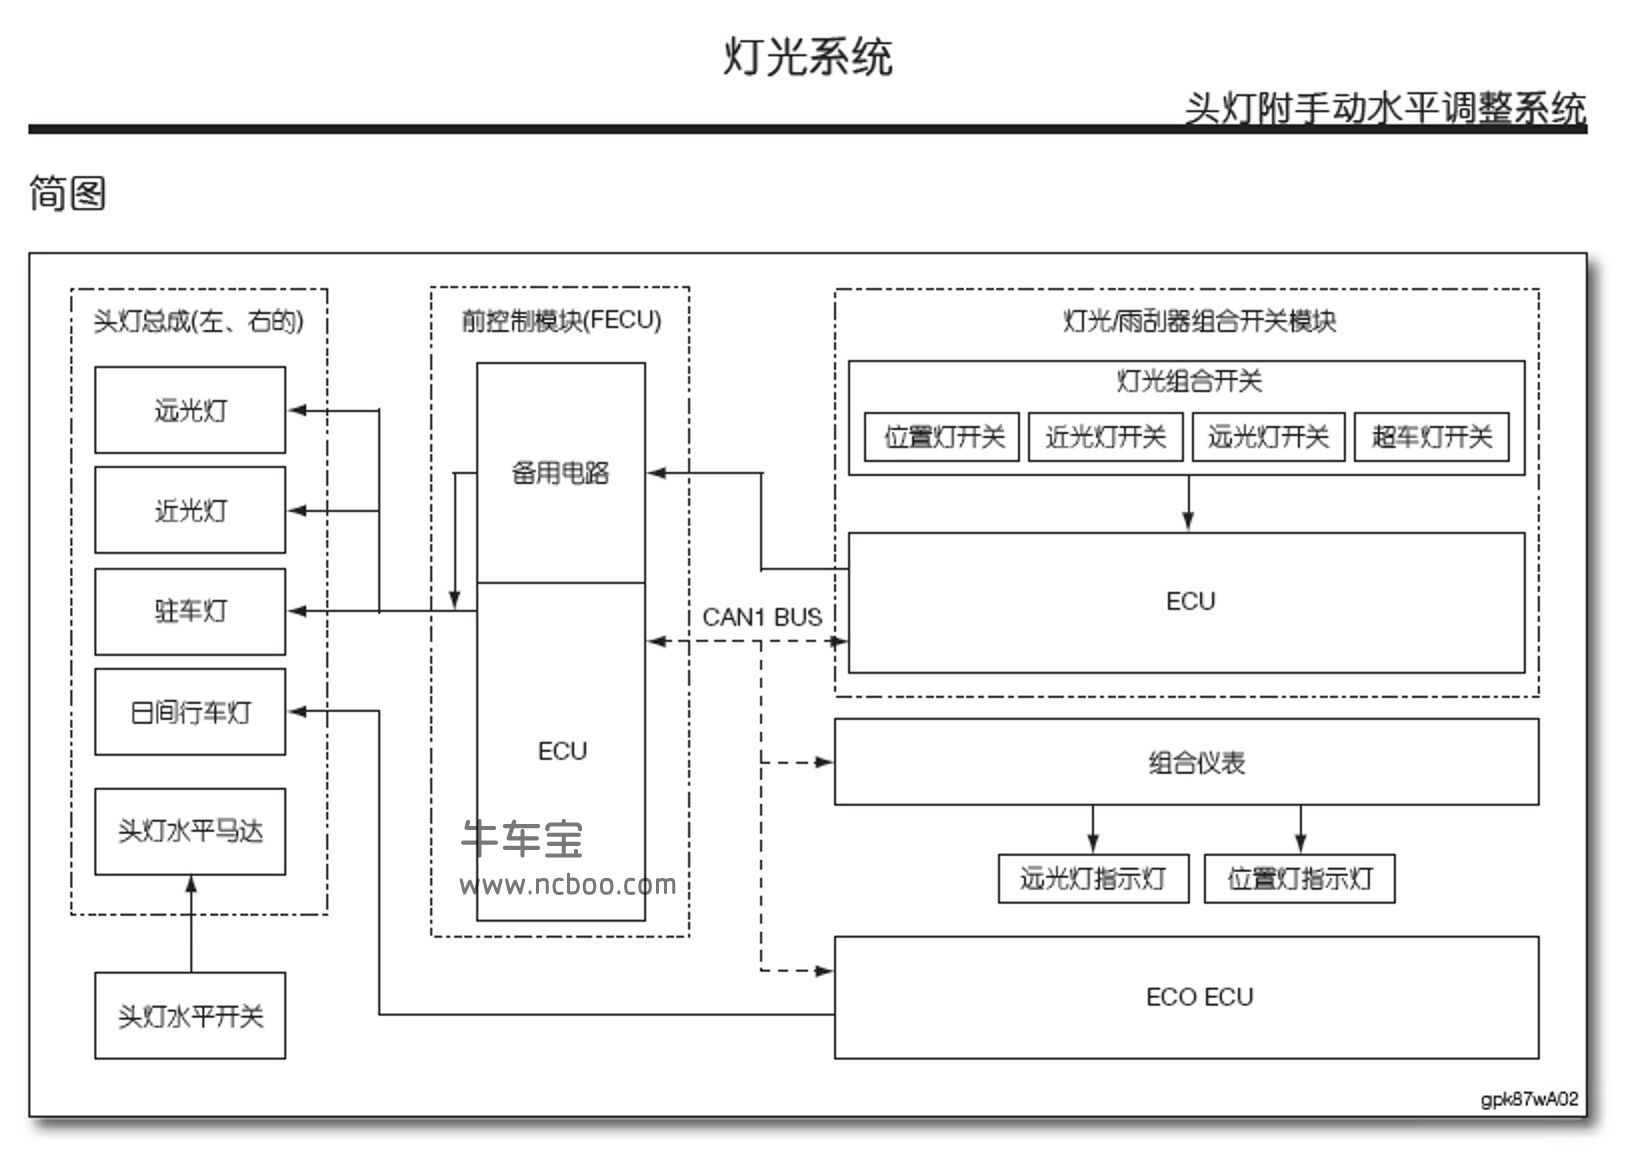 2014-2016款纳智捷优6(U6)原厂维修手册(含电路图)下载